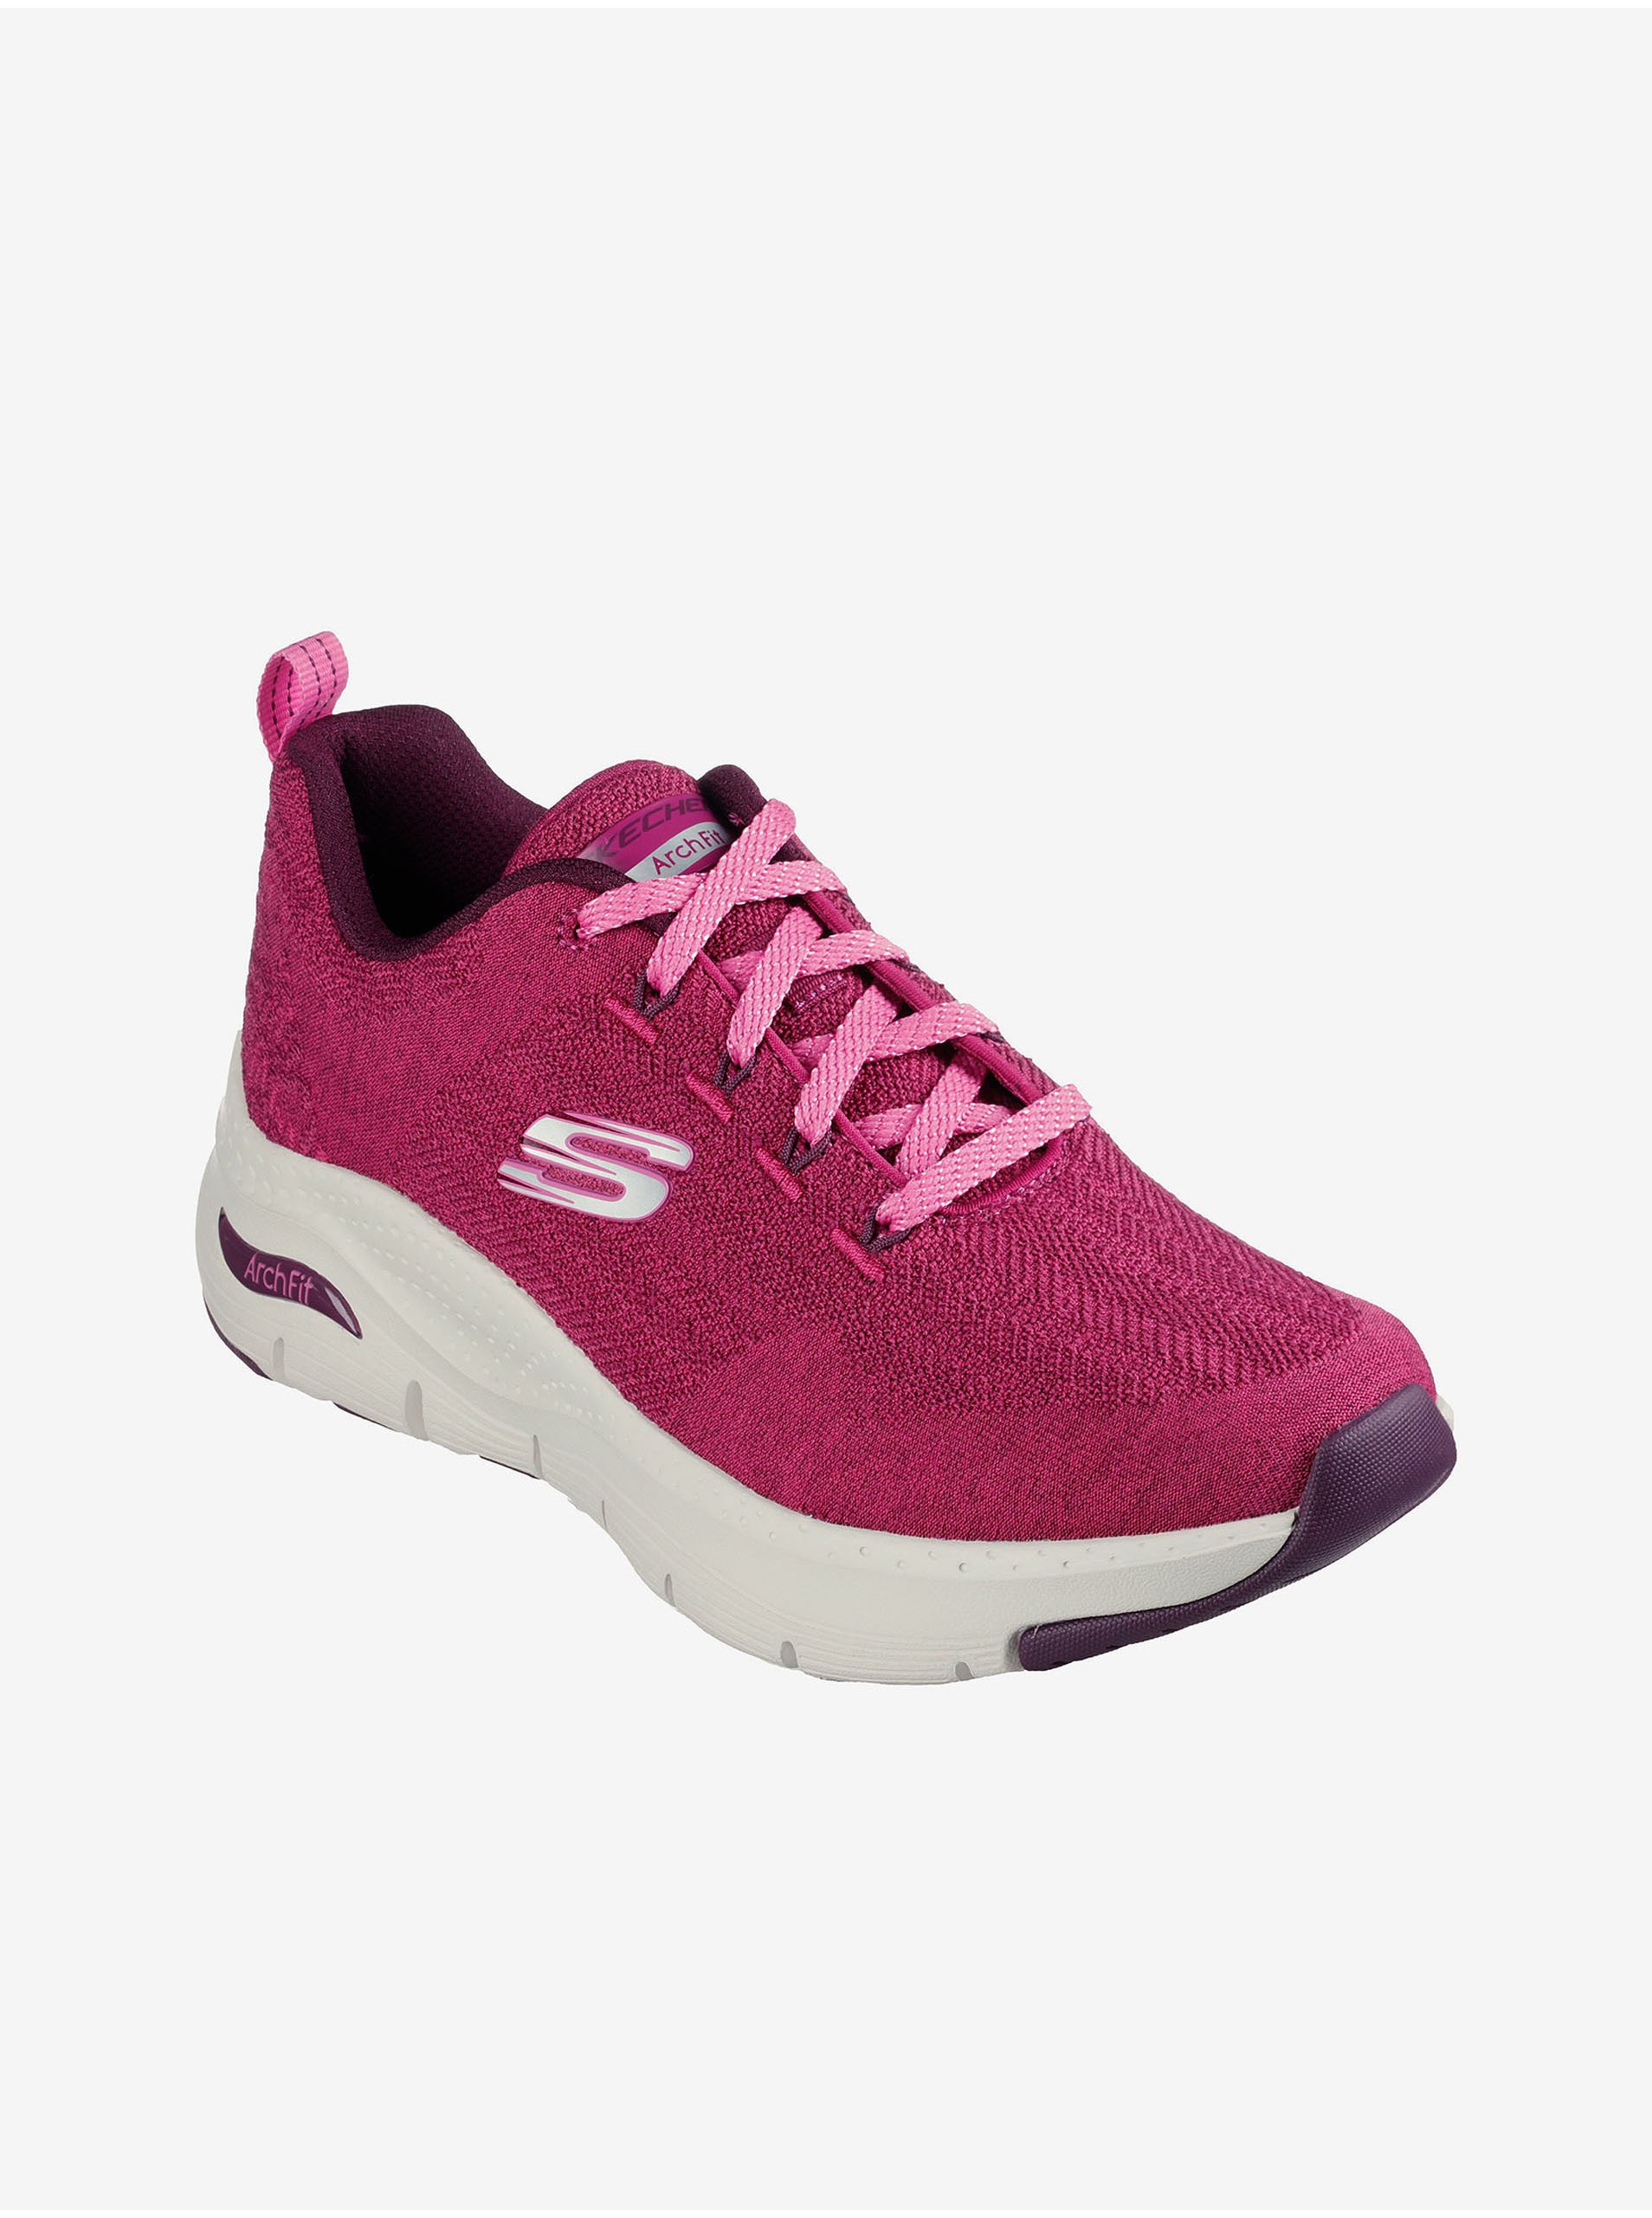 E-shop Tmavě růžové dámské tenisky Skechers